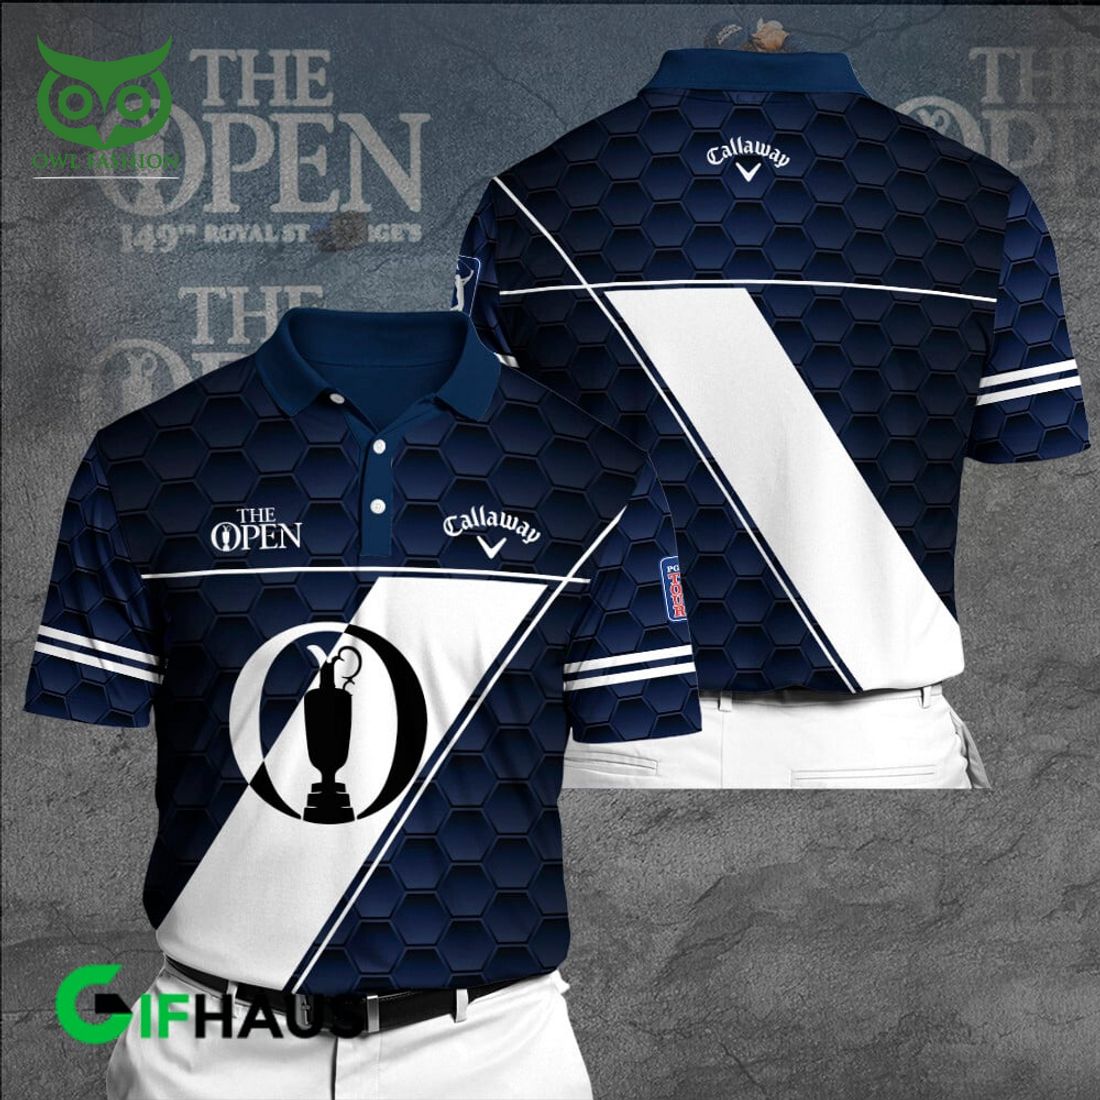 callaway x the open championship golf ball pattern 3d shirt 1 Rt9a0